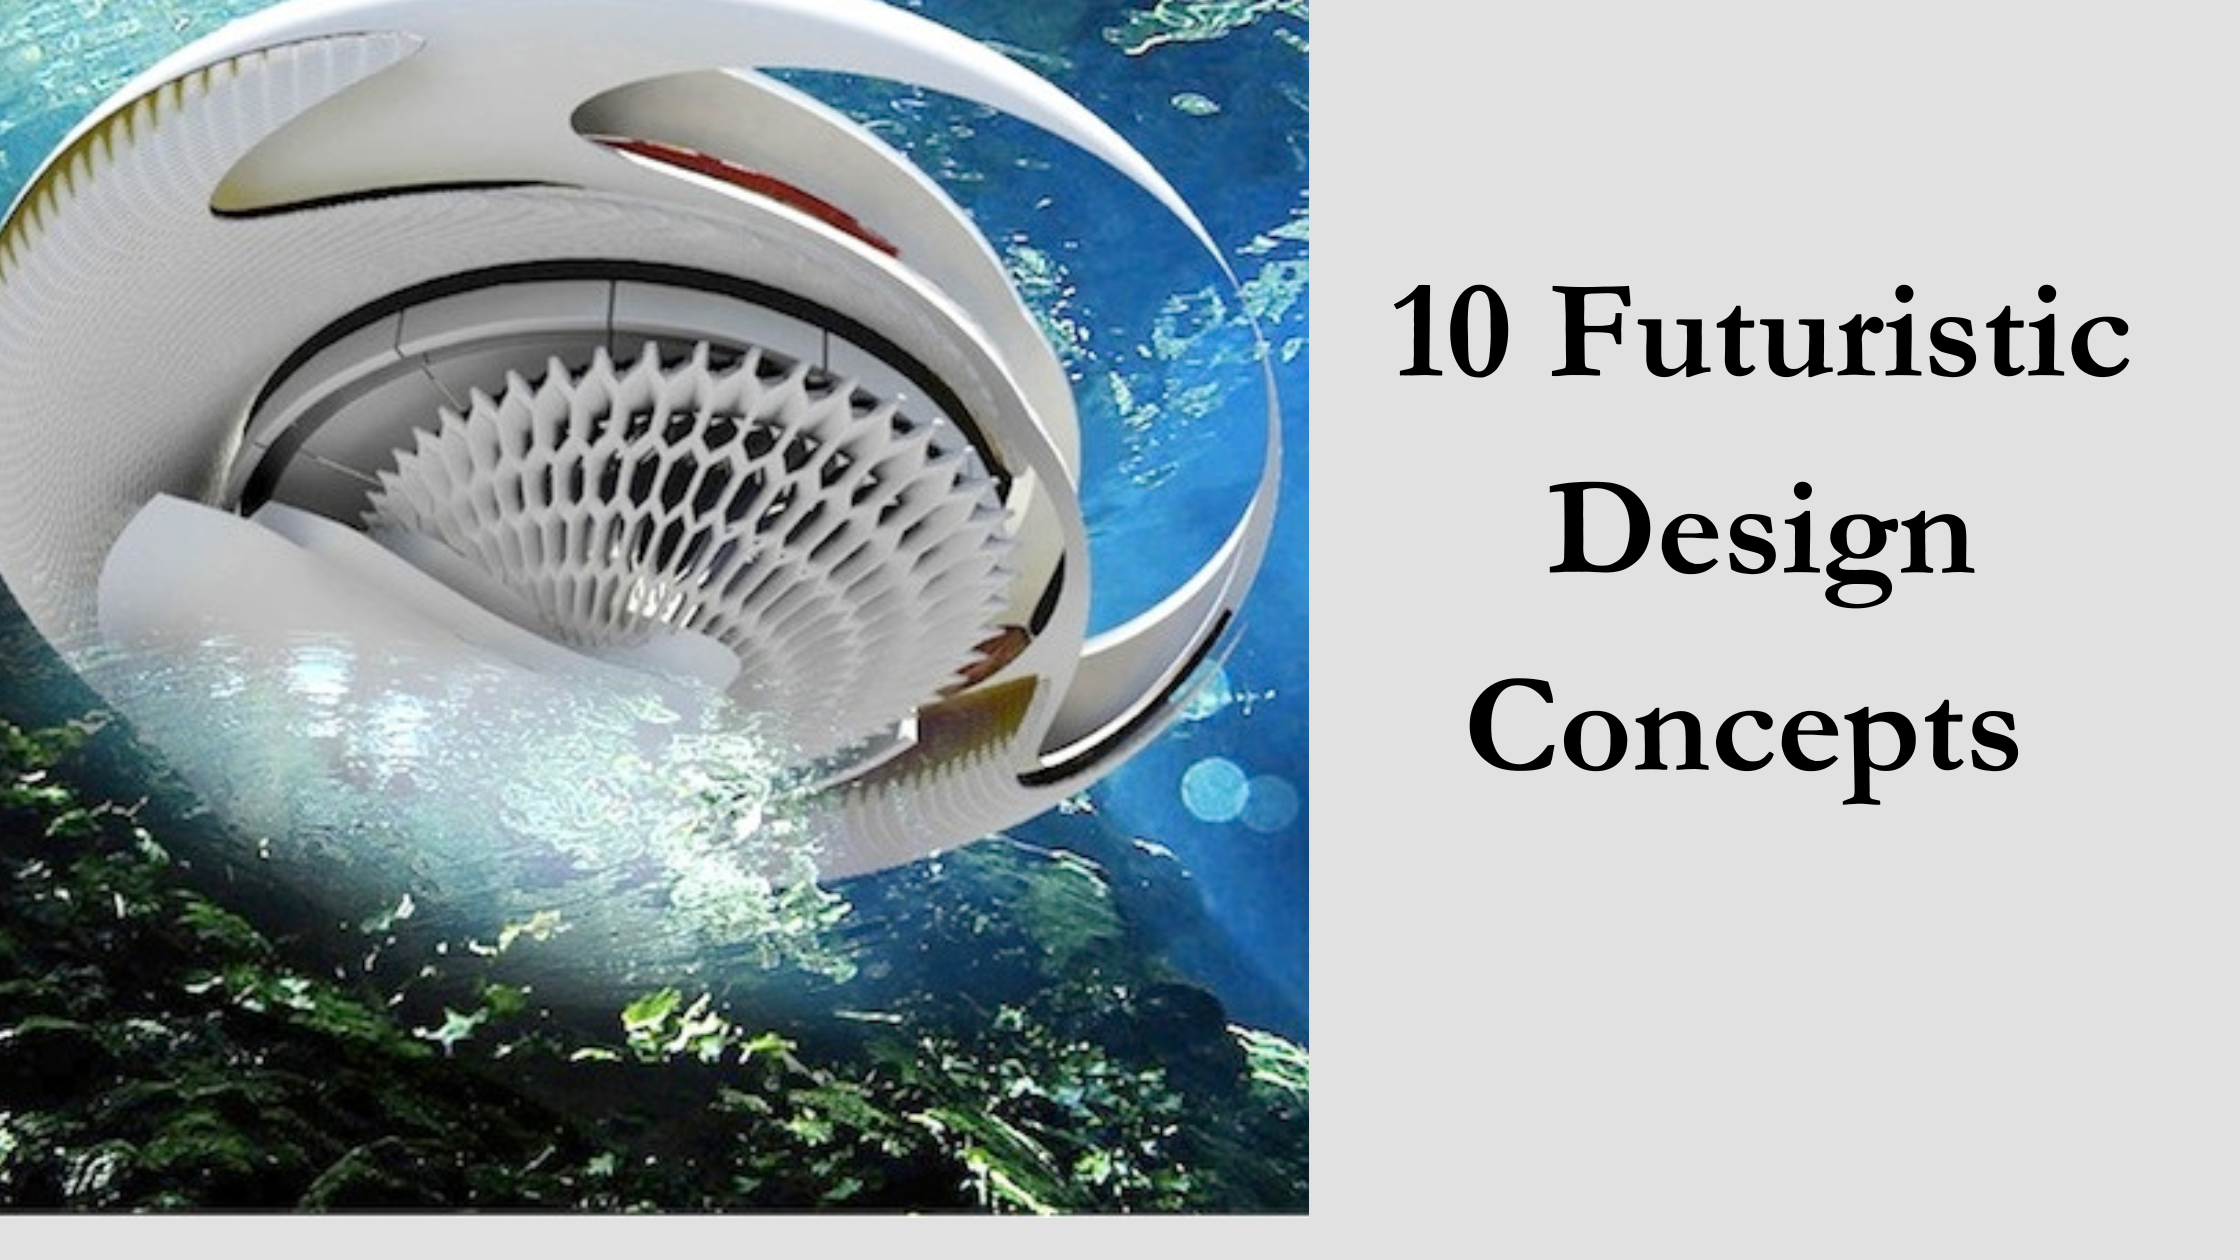 10 Futuristic Design Concepts